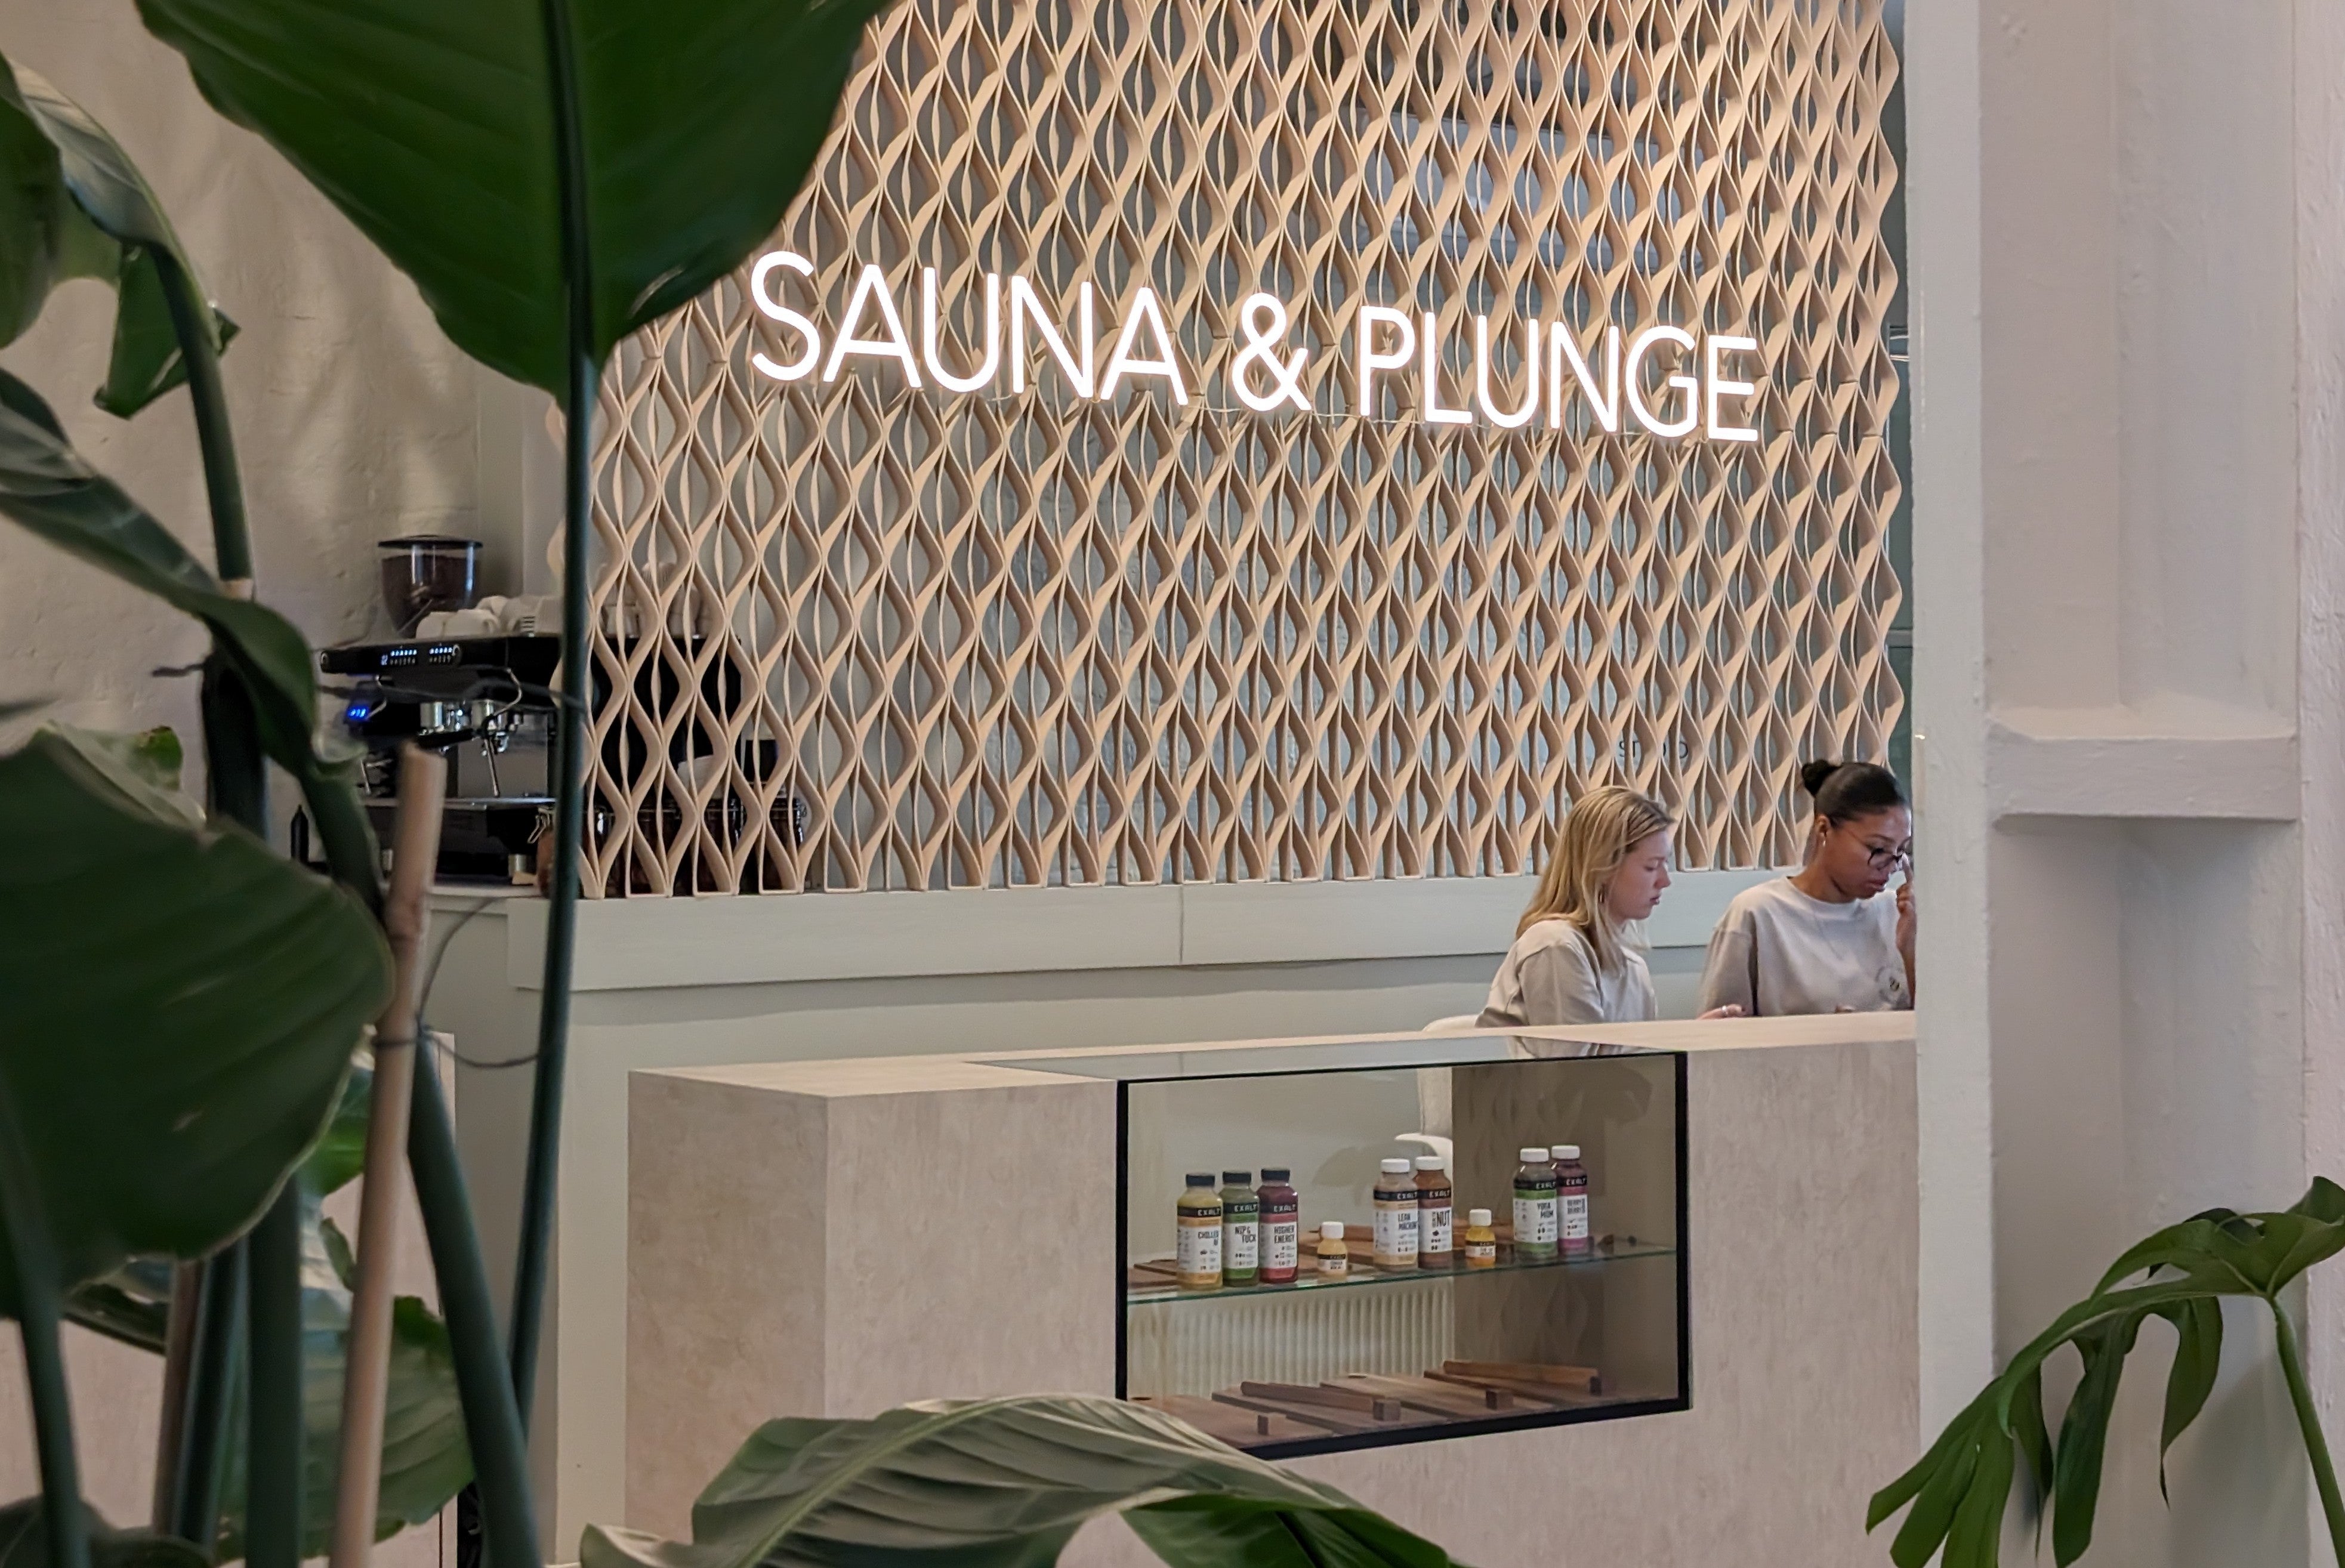 Sauna and Plunge